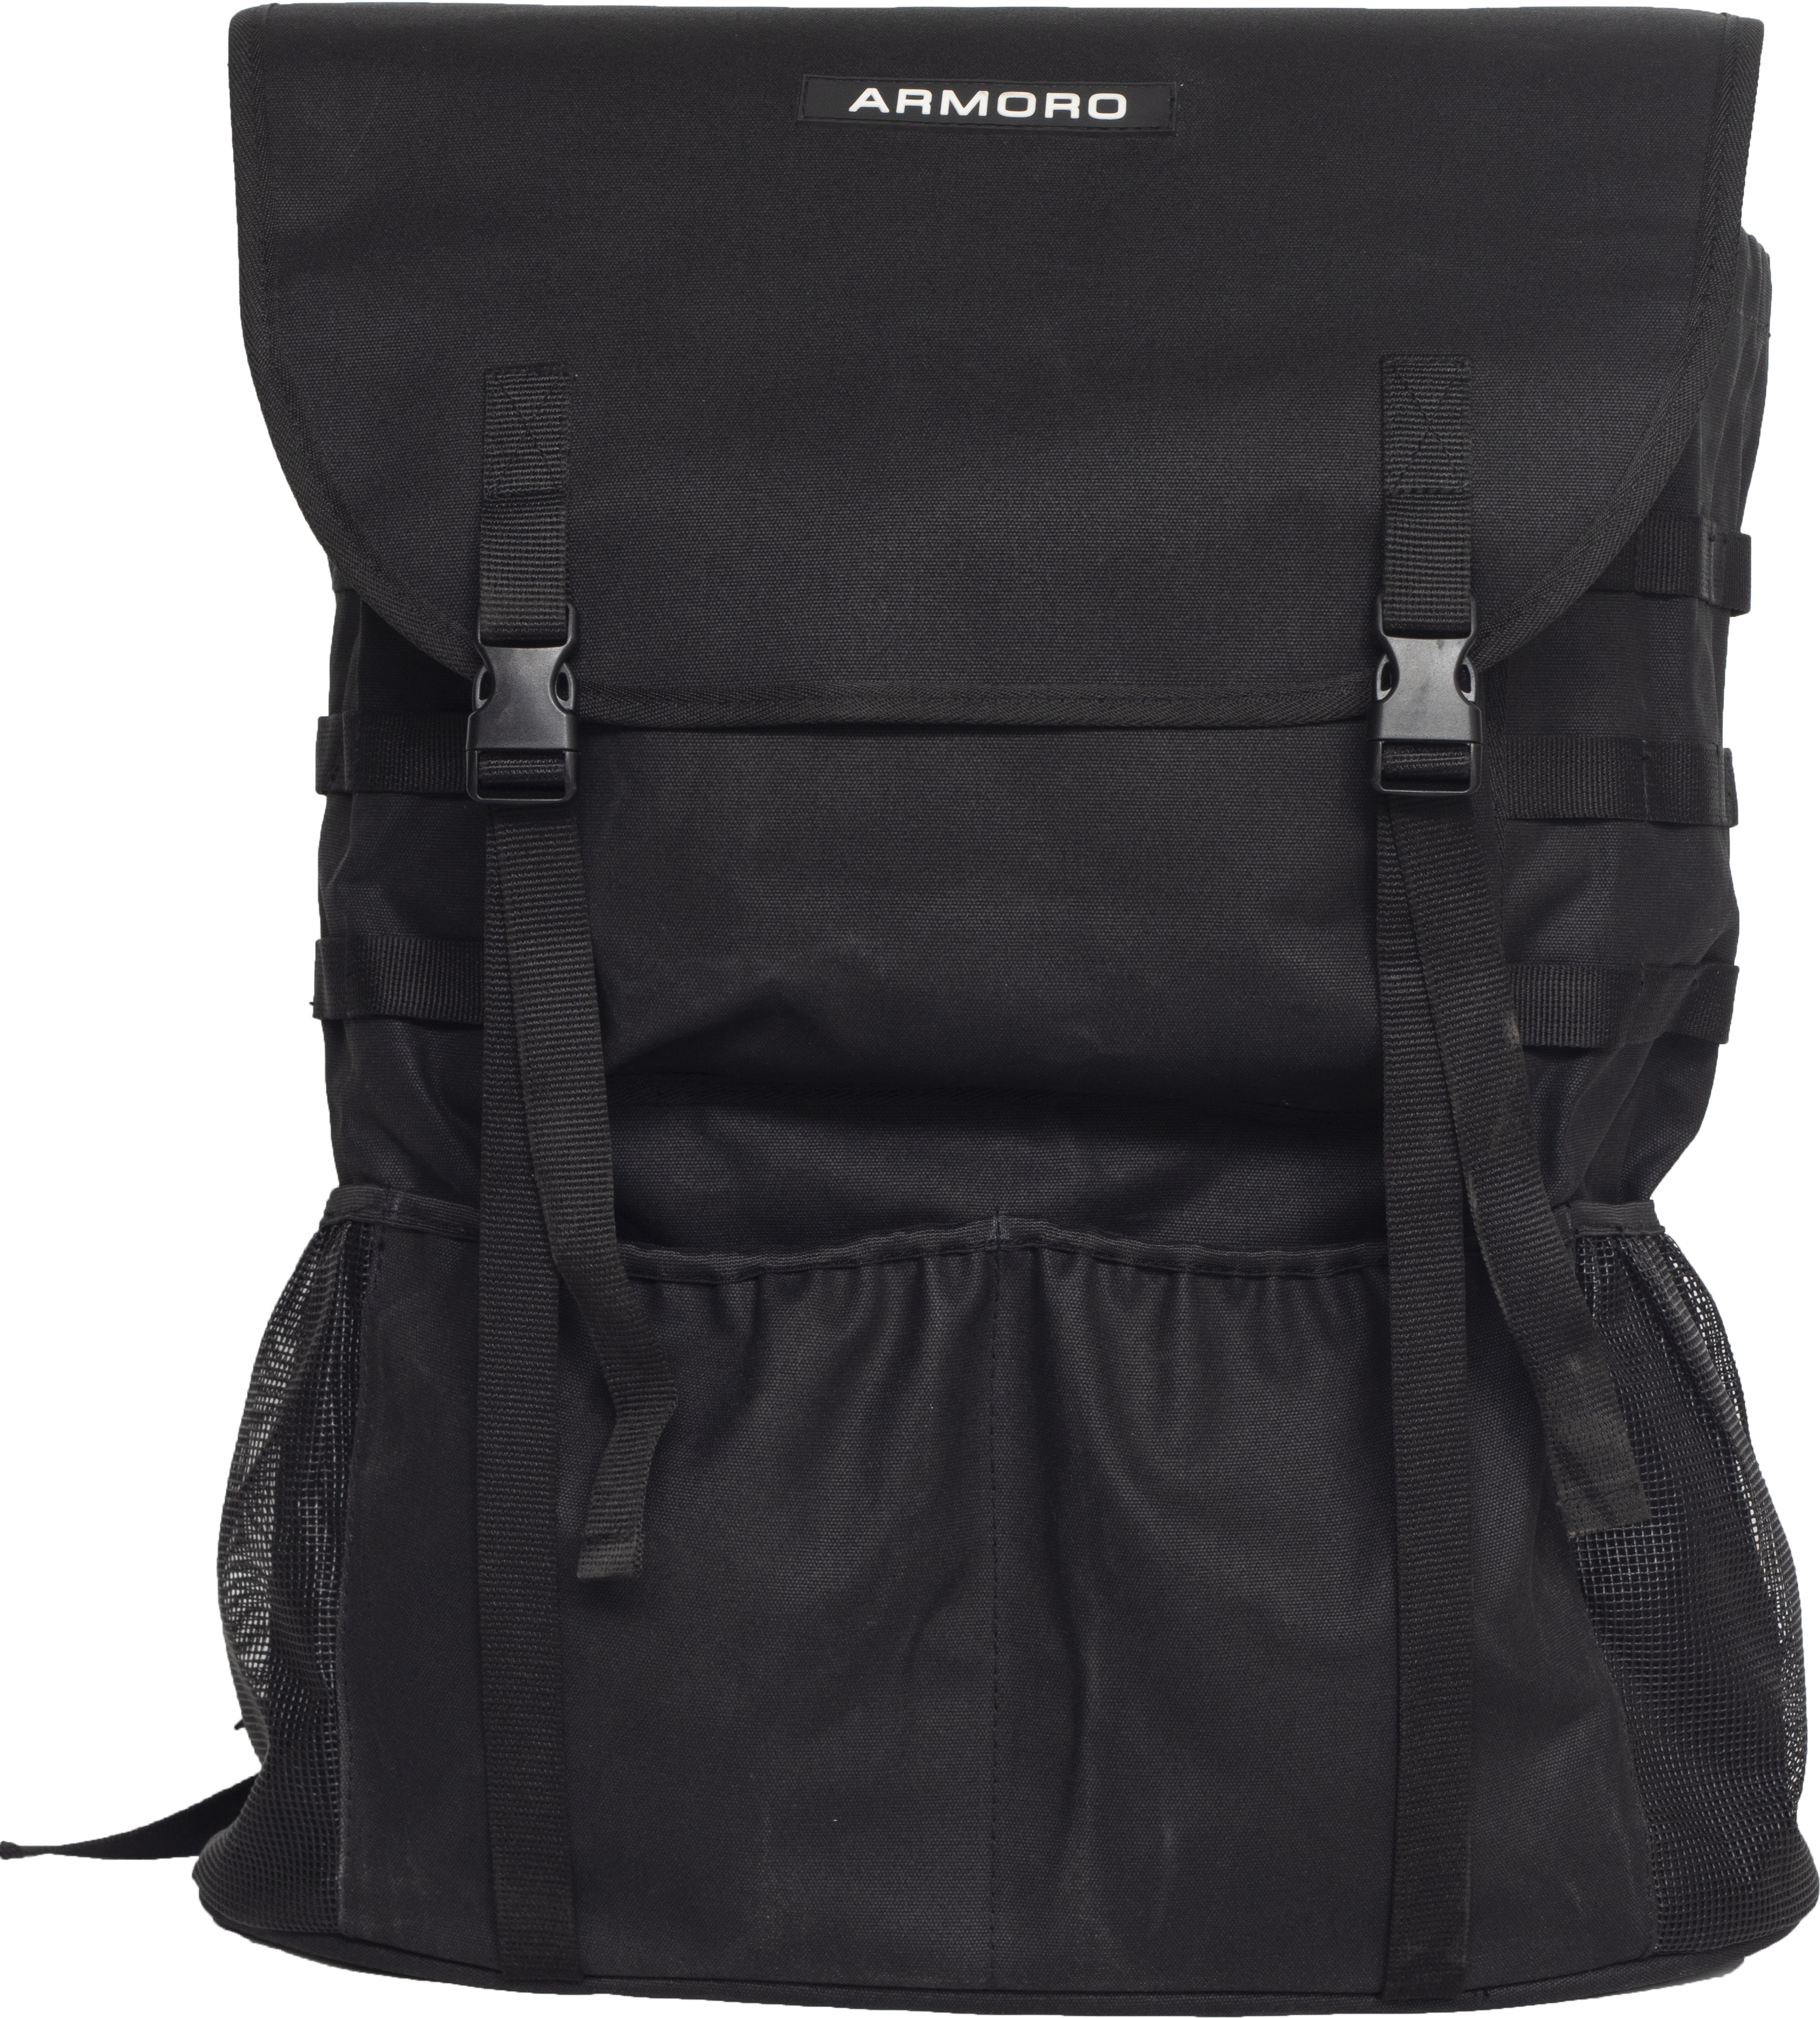 Airwalk Classic Backpack White Grey Blue 17x11.5x5